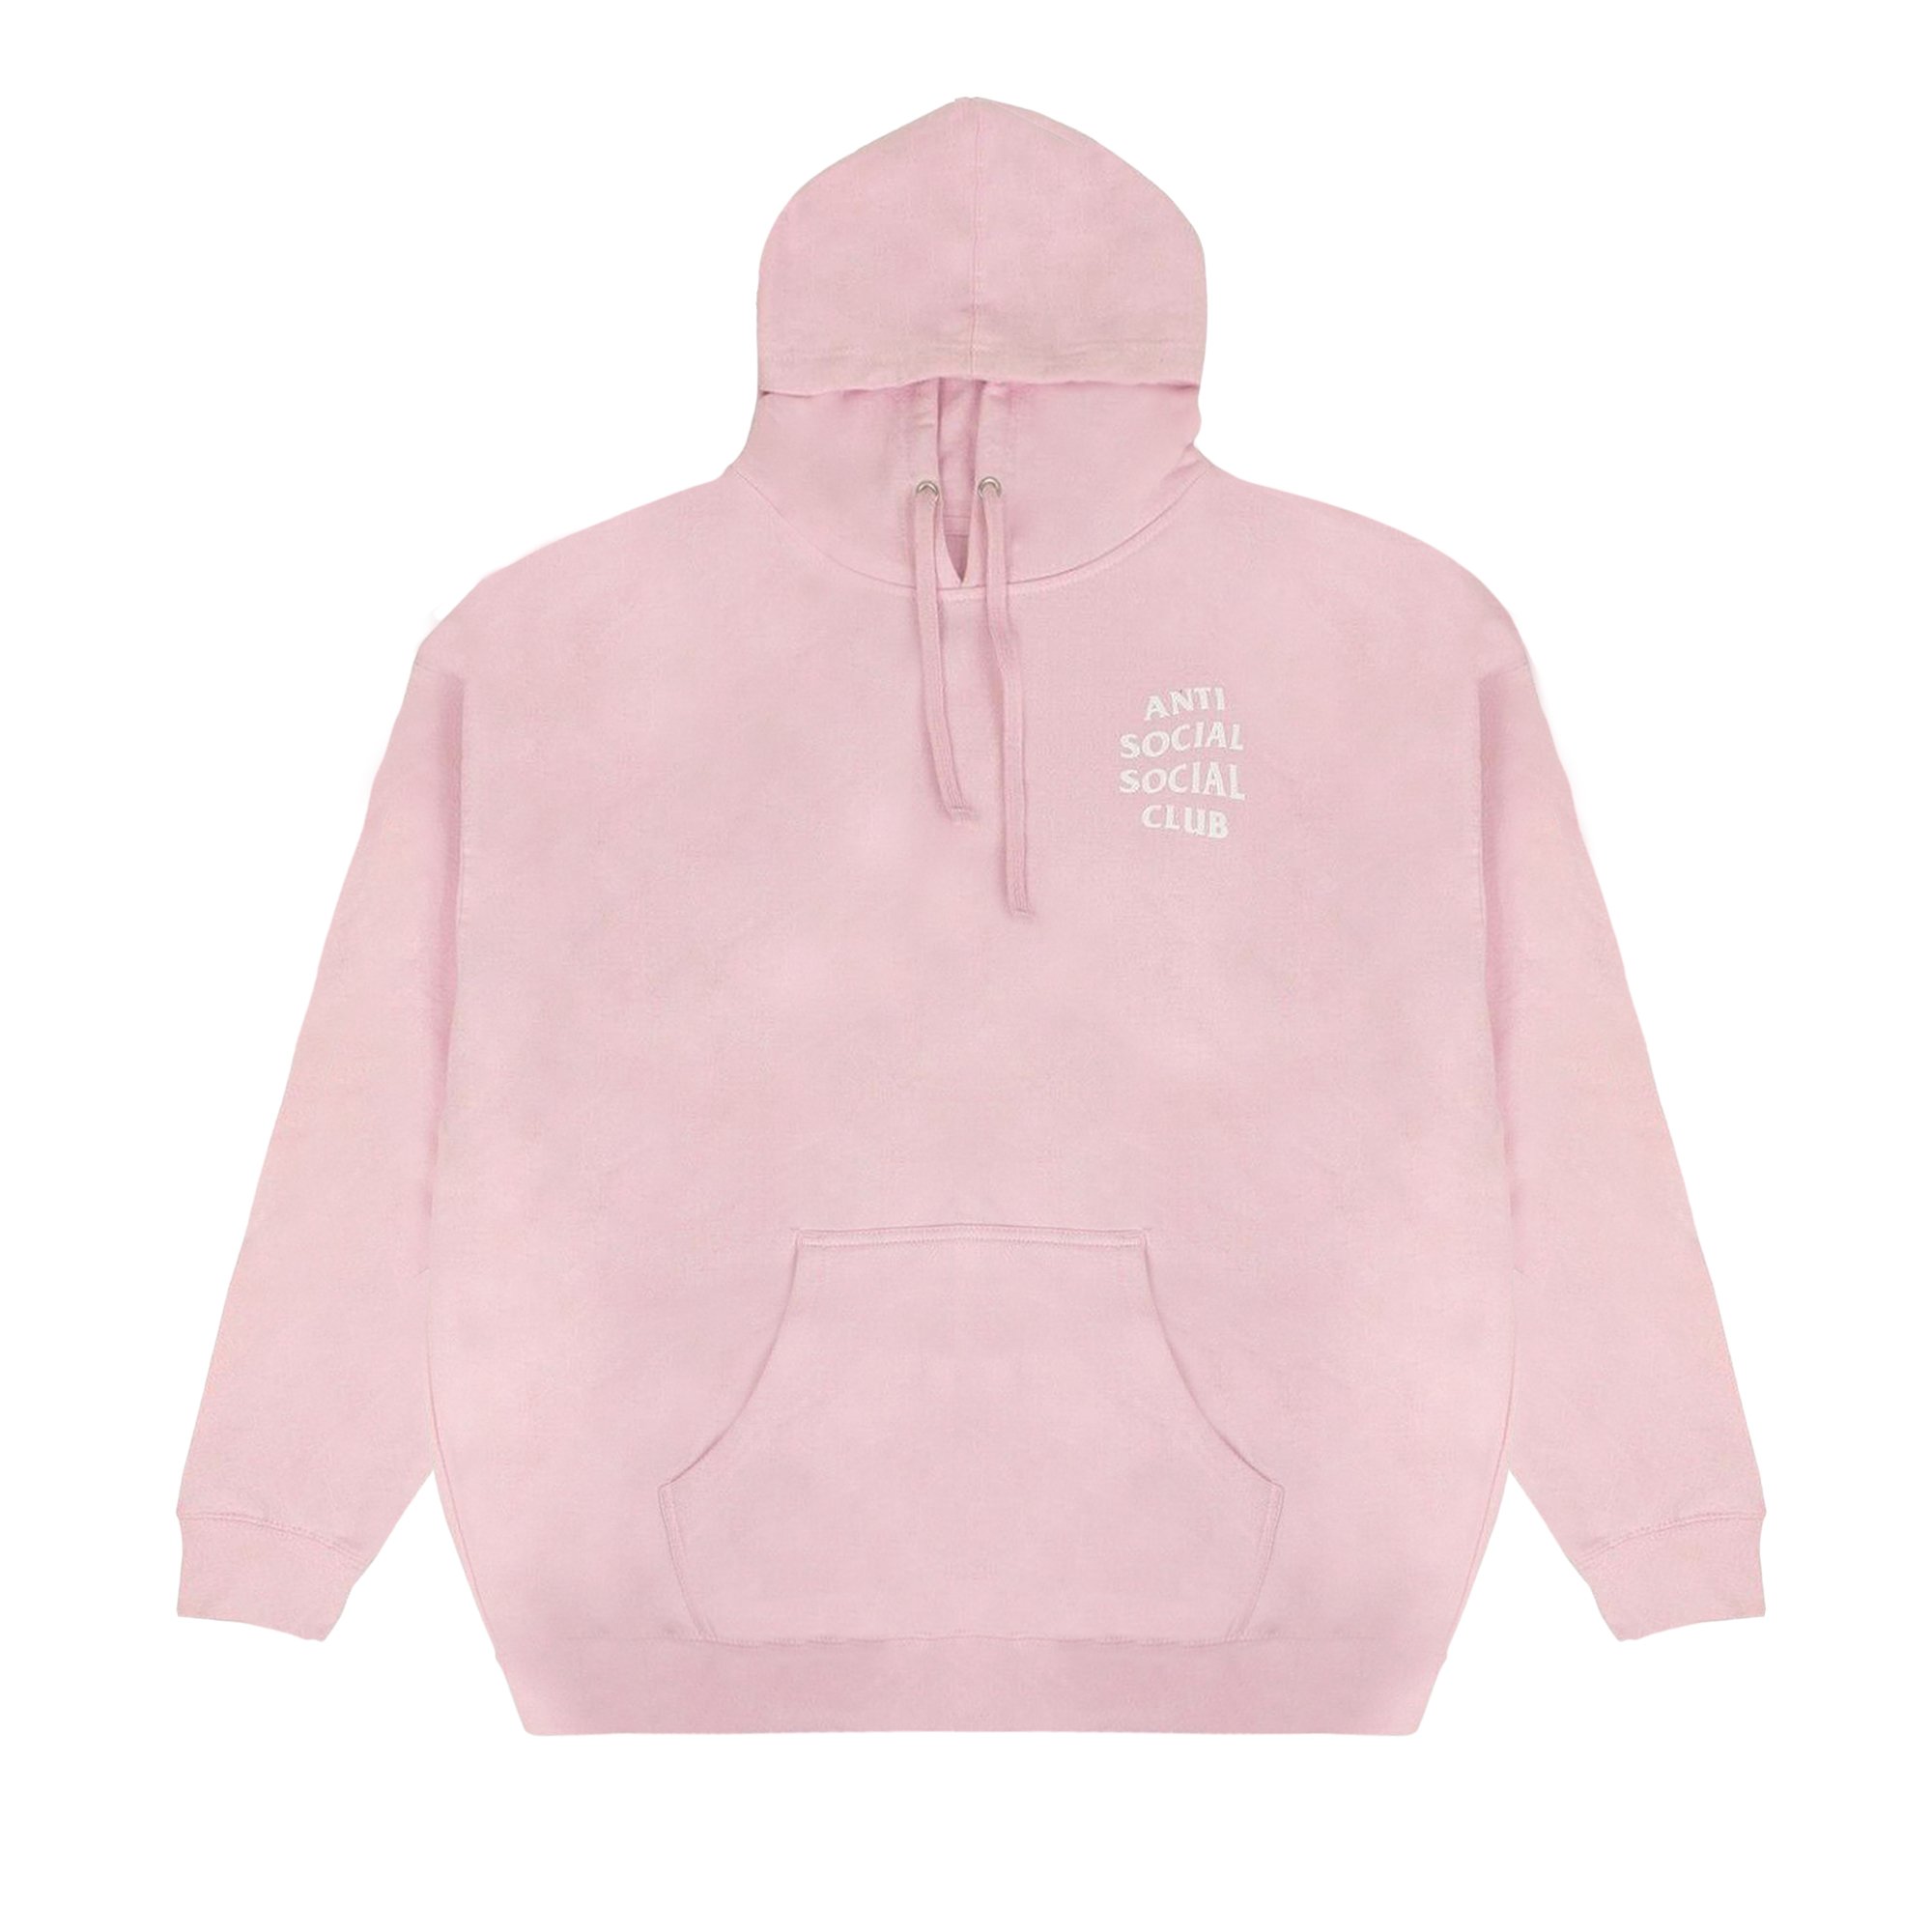 Anti Social Social Club Logo Hooded Sweatshirt 'Pink'